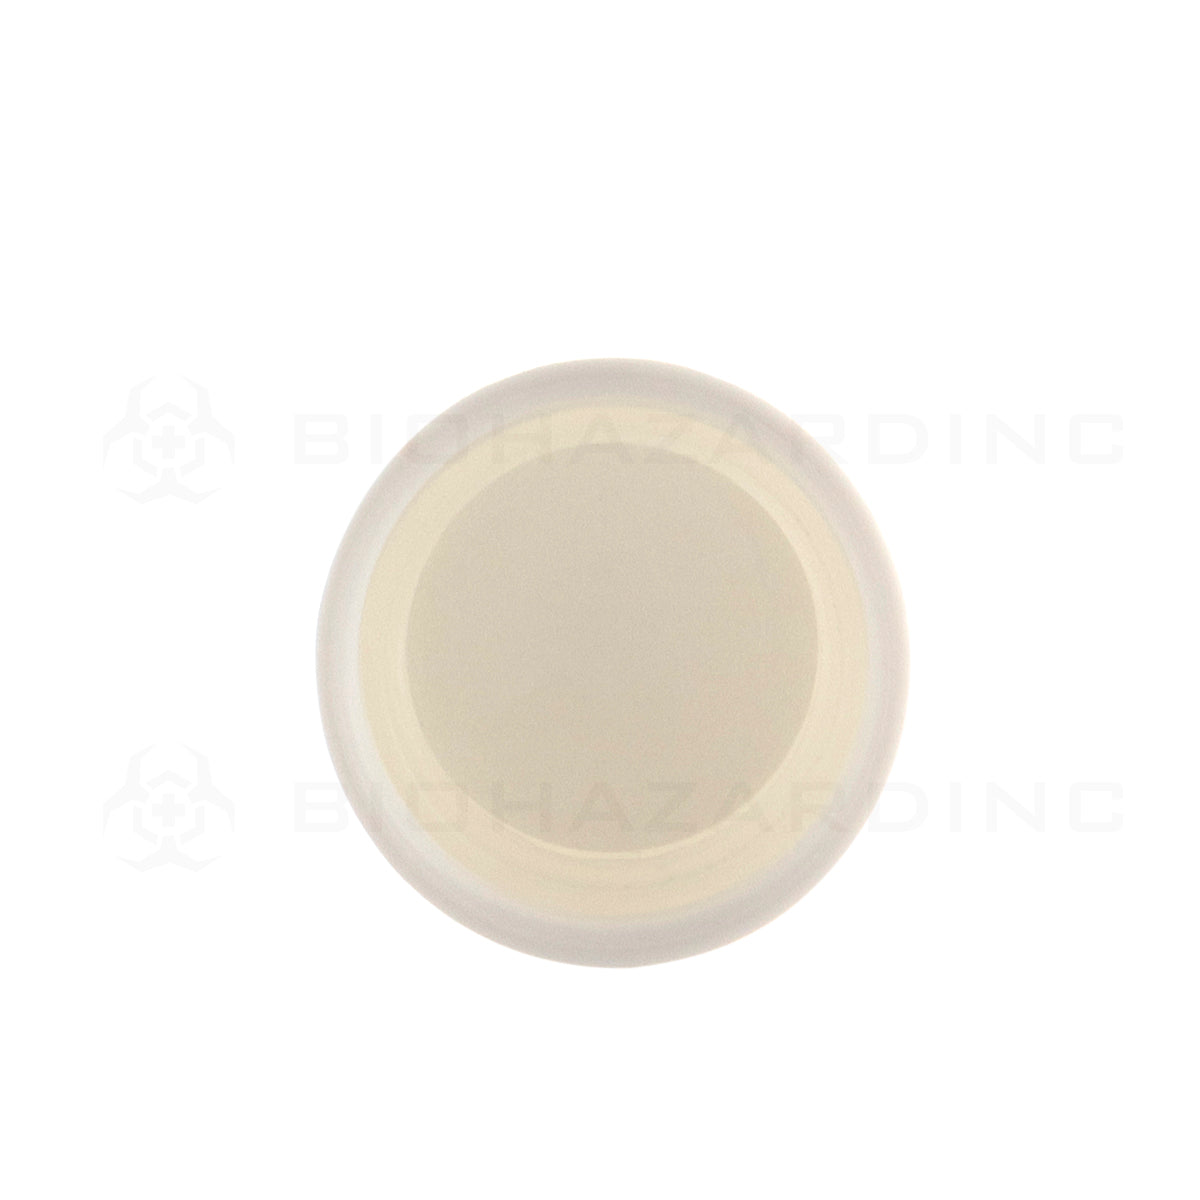 Child Resistant Cap | Smooth Plastic Cap | 18mm - Matte White - 144 Count Child Resistant Cap Biohazard Inc   